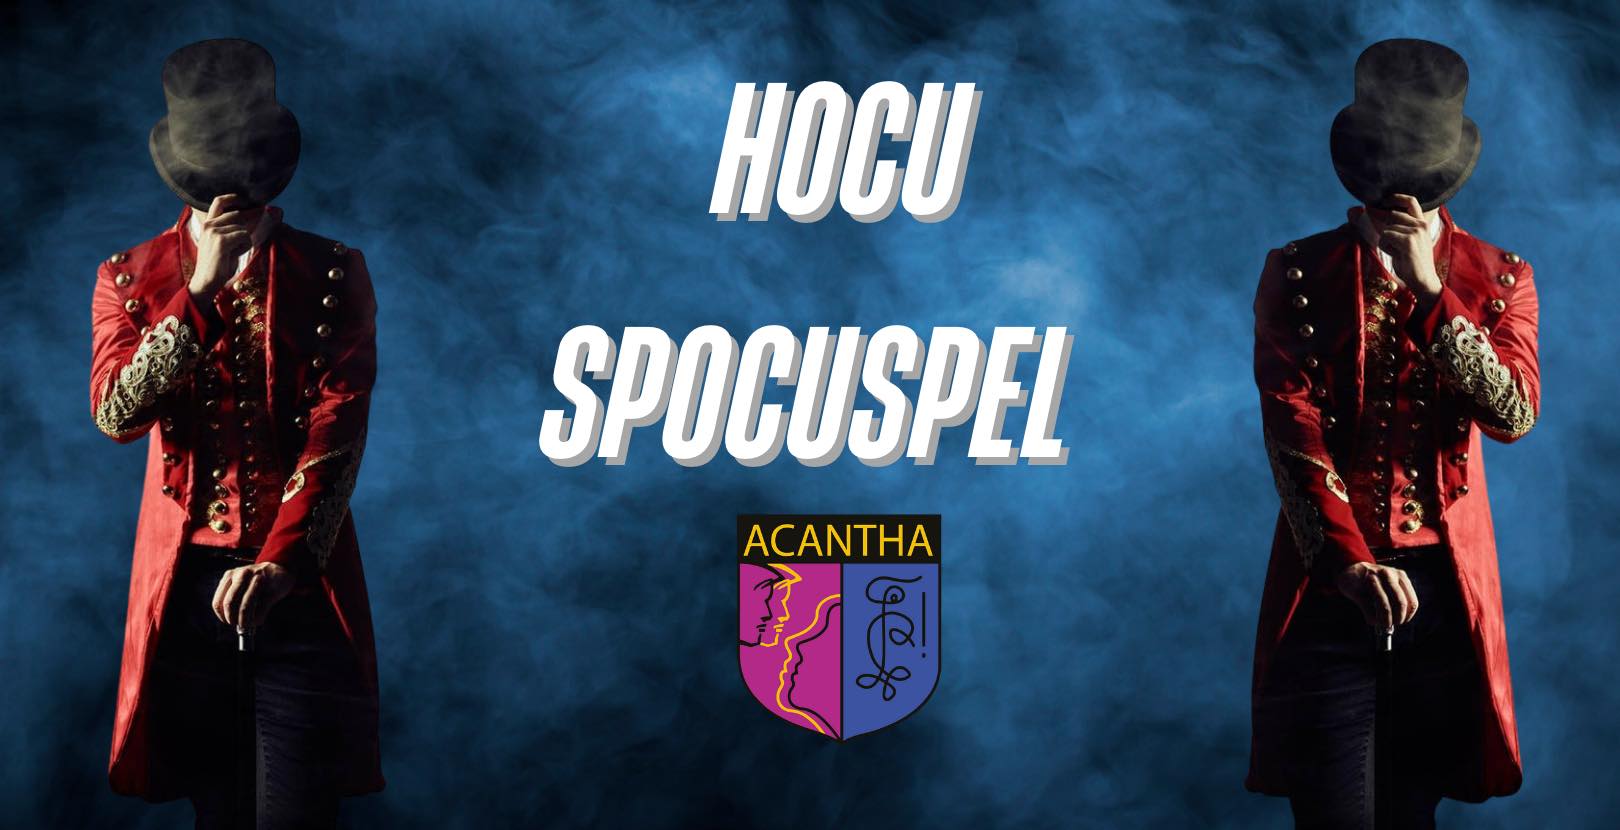 Acanta's HocuSpocuspel